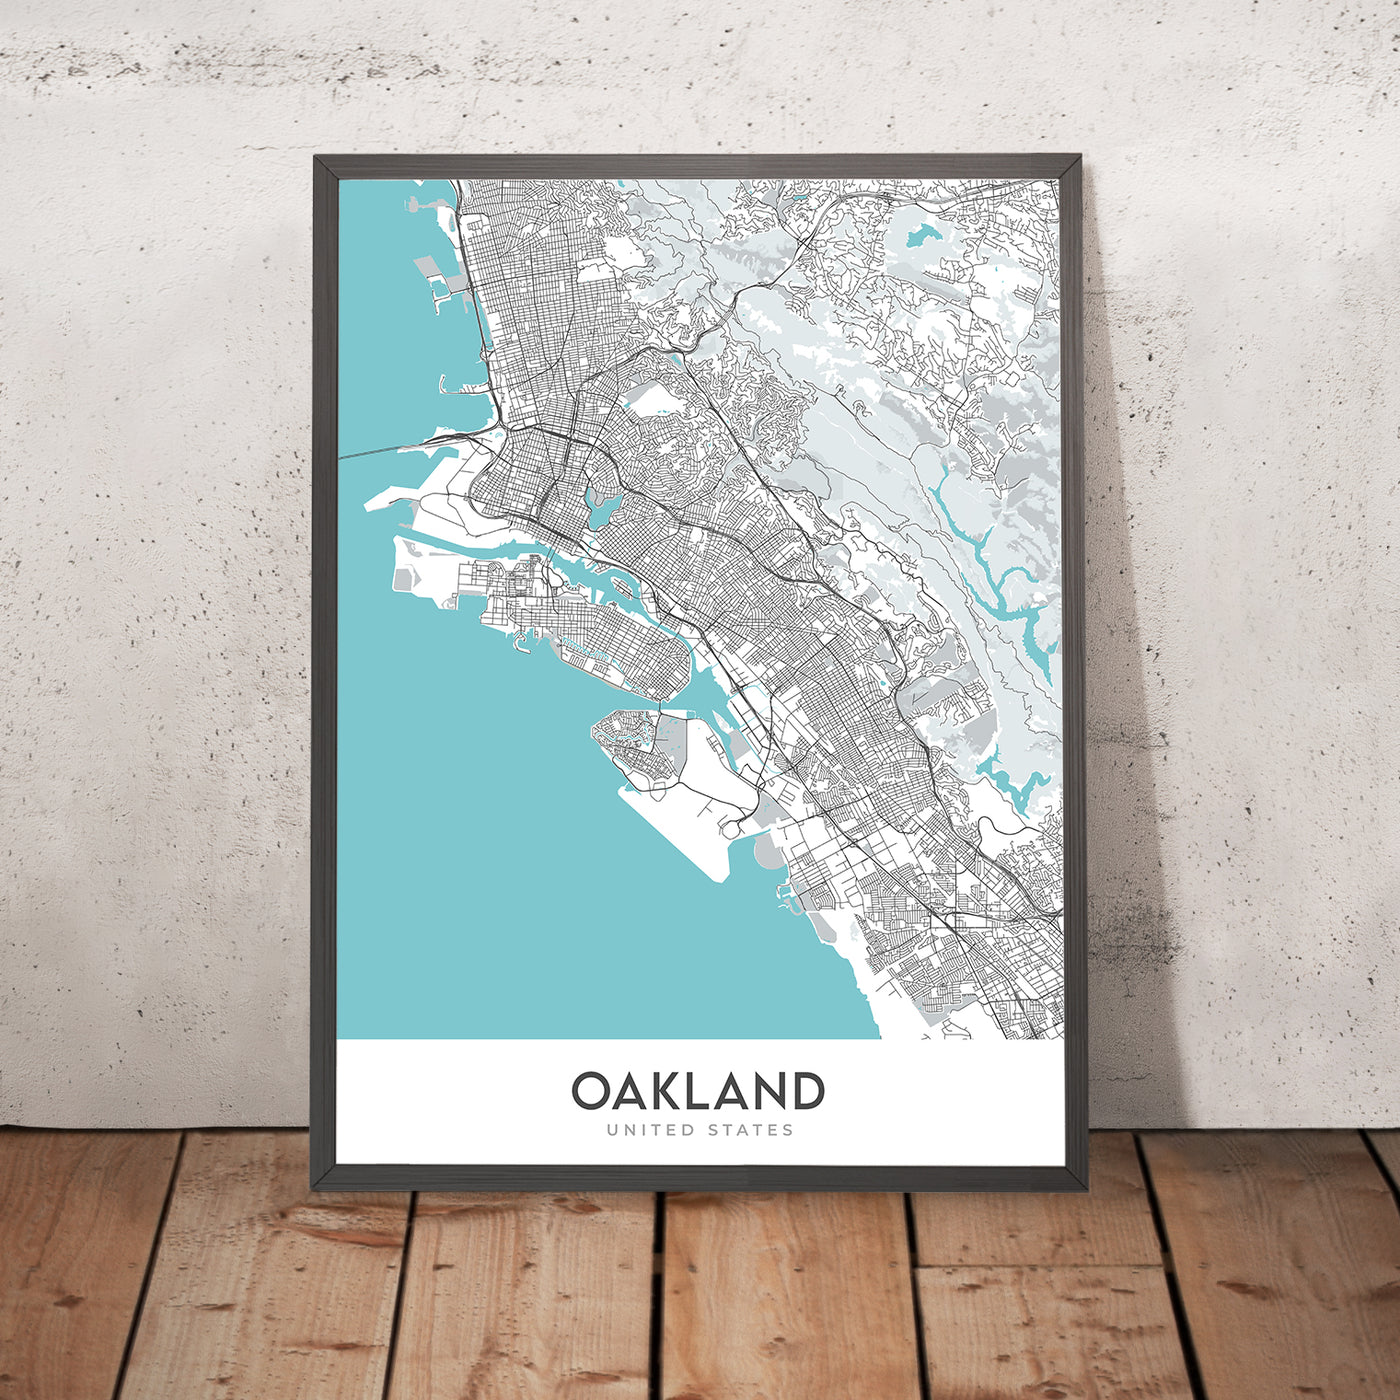 Mapa moderno de la ciudad de Oakland, CA: centro, Jack London Sq, Chinatown, Lake Merritt, Fox Theatre